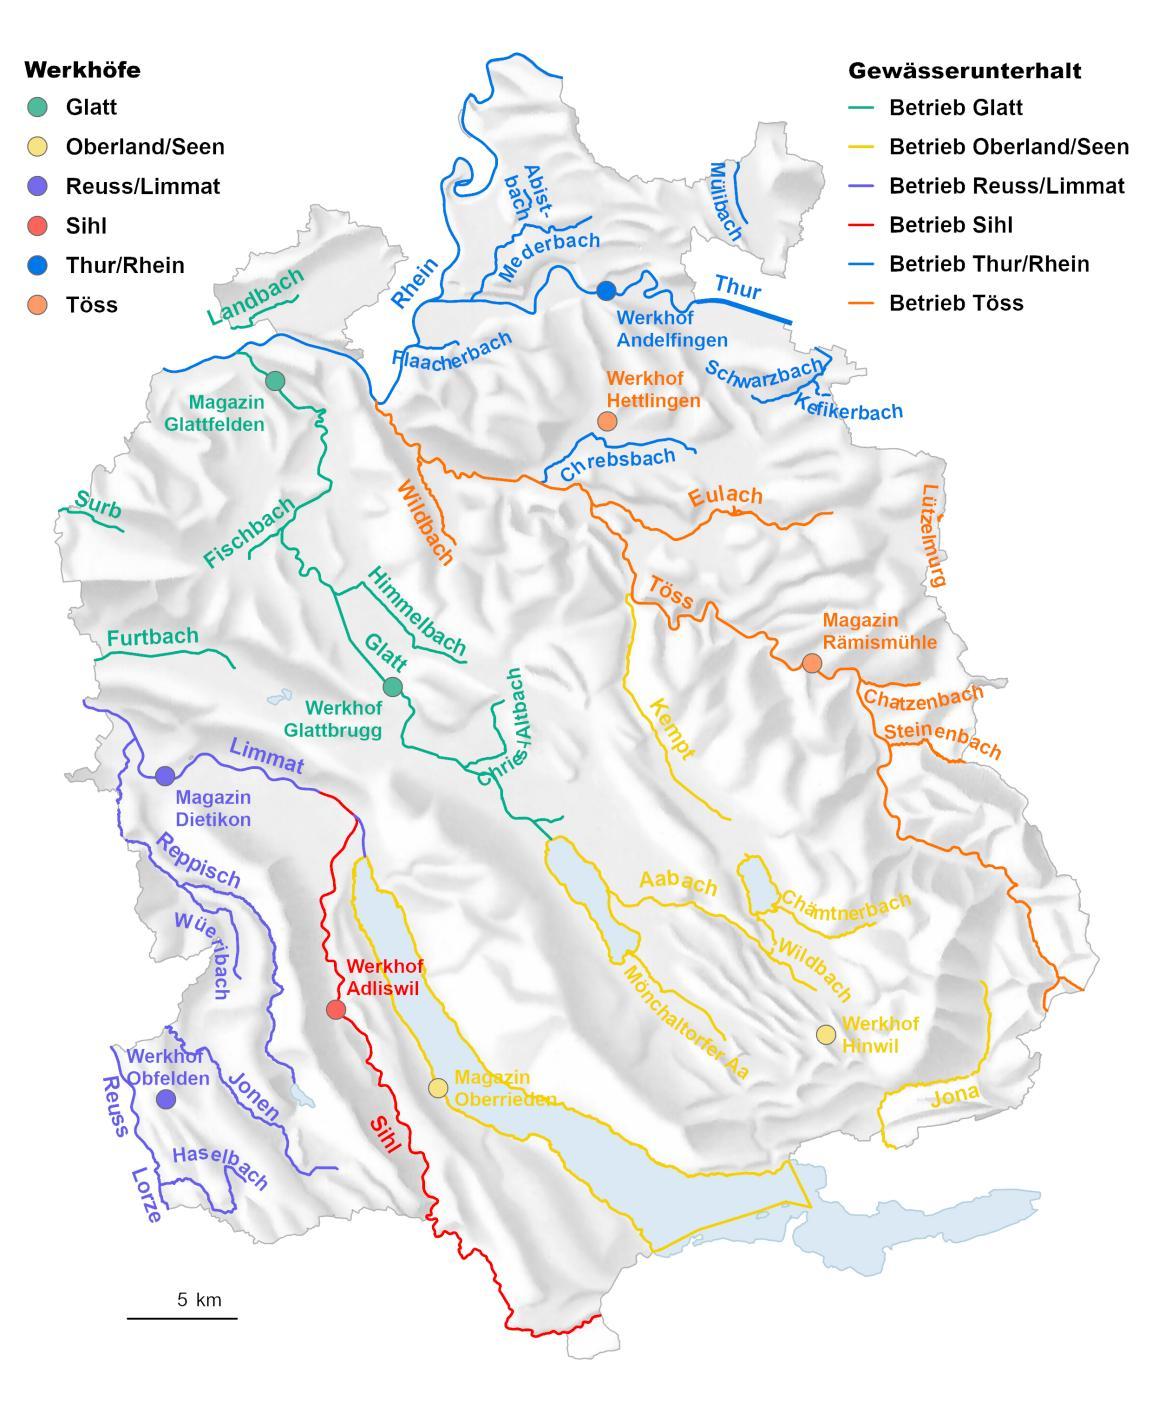 Die Karte zeigt die Gebietseinteilung des Gewässerunterhalts.